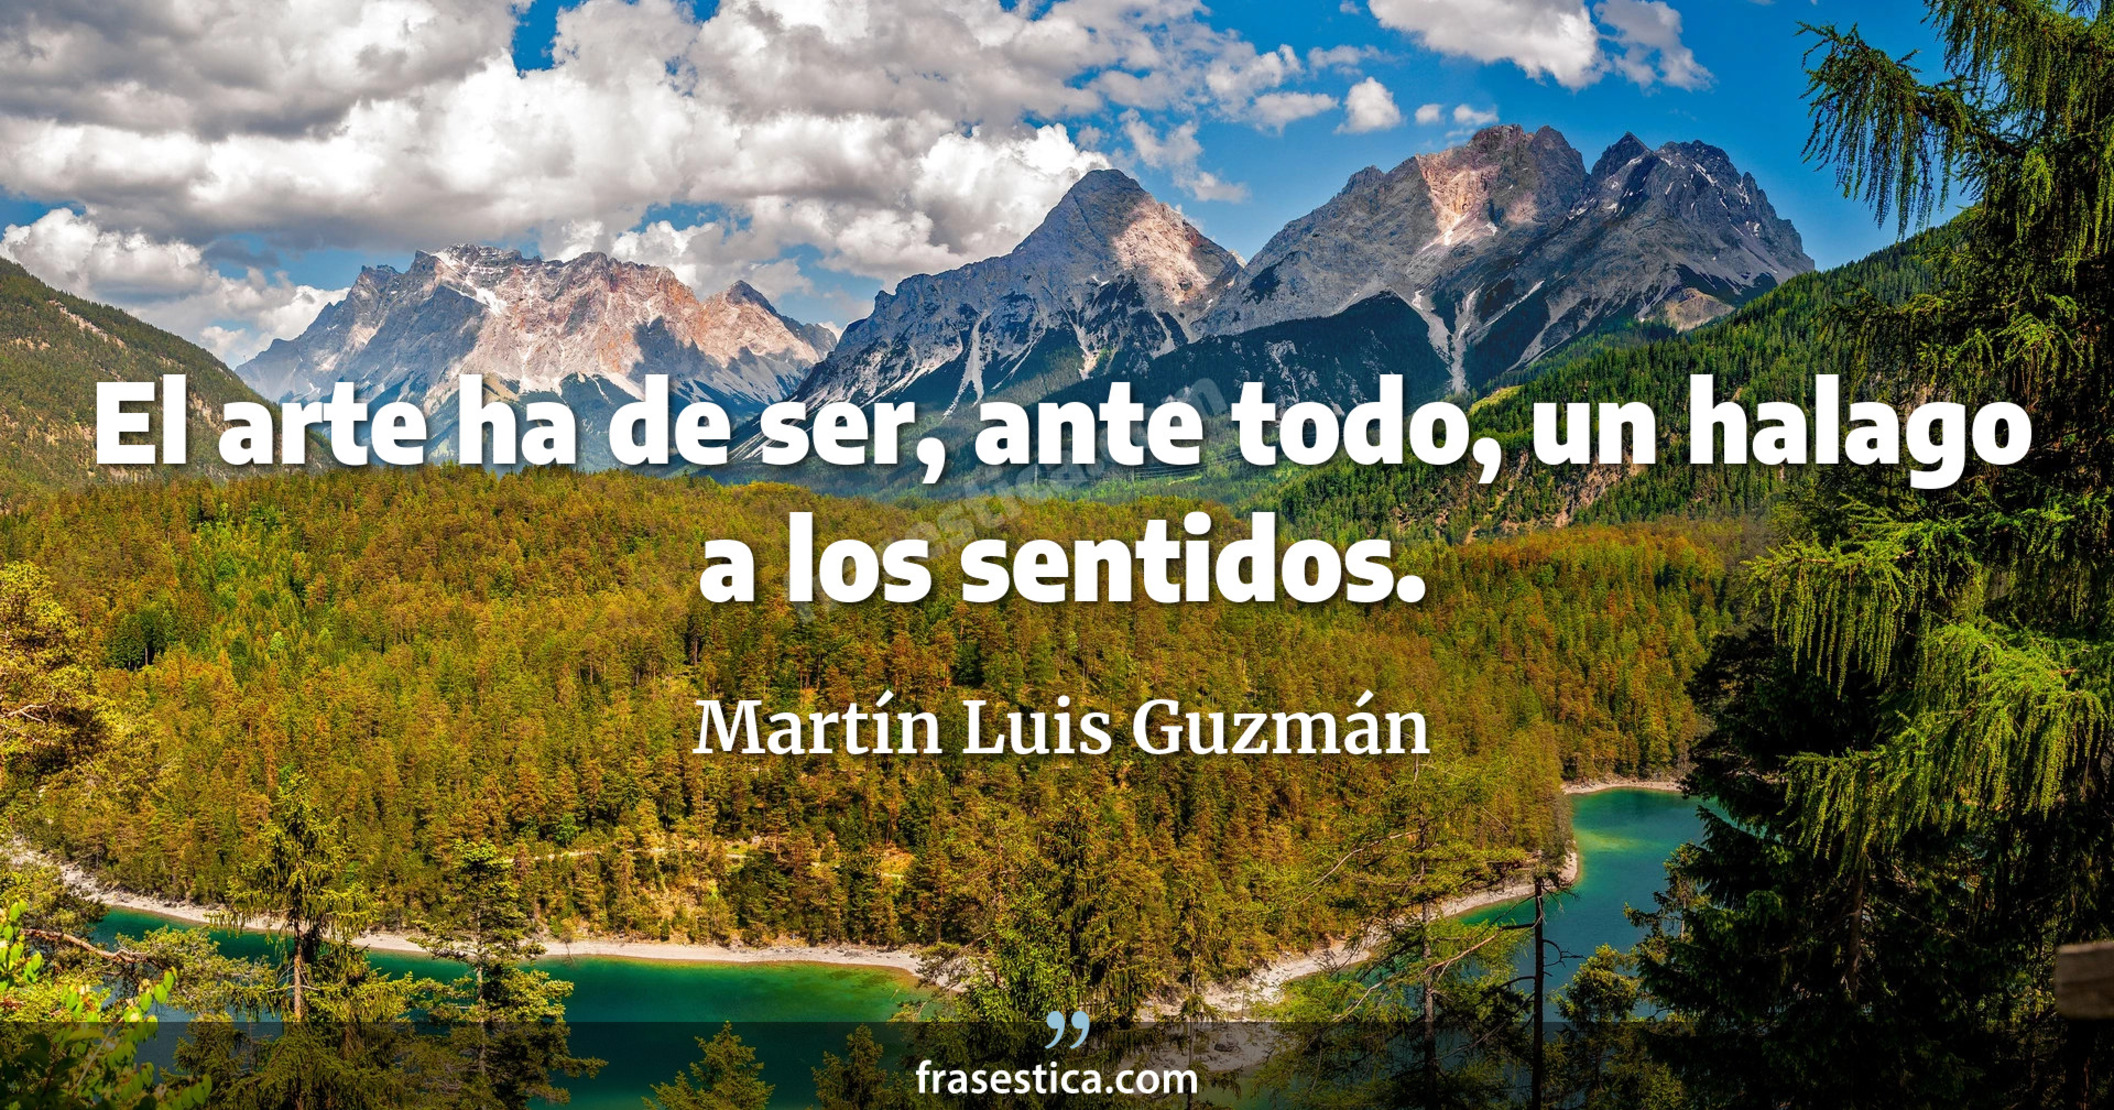 El arte ha de ser, ante todo, un halago a los sentidos. - Martín Luis Guzmán